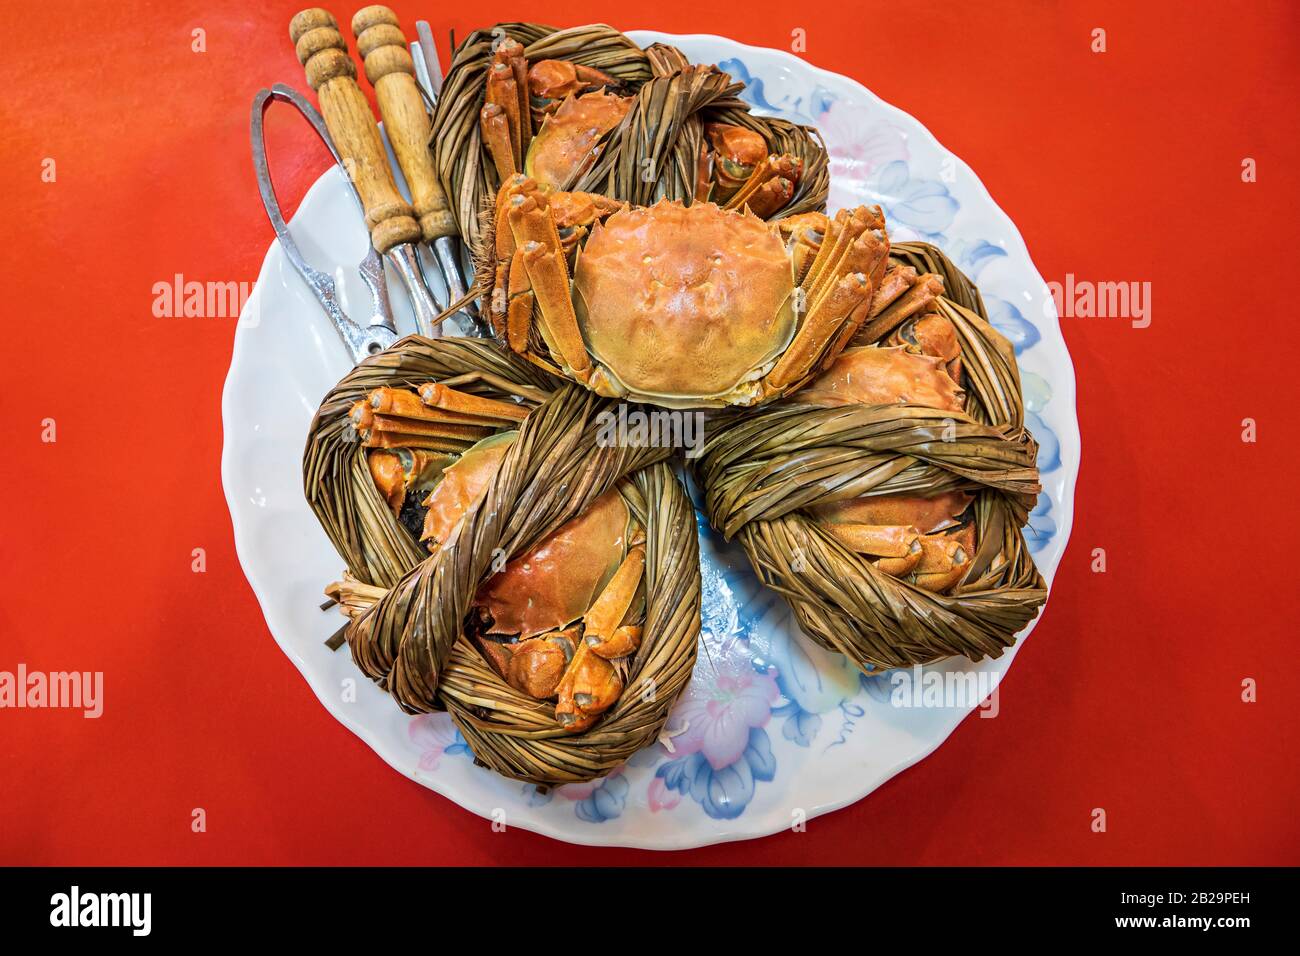 Chinese mitten crab on plate, Hsinchu Fish Harbor, Hsinchu City, Taiwan Stock Photo